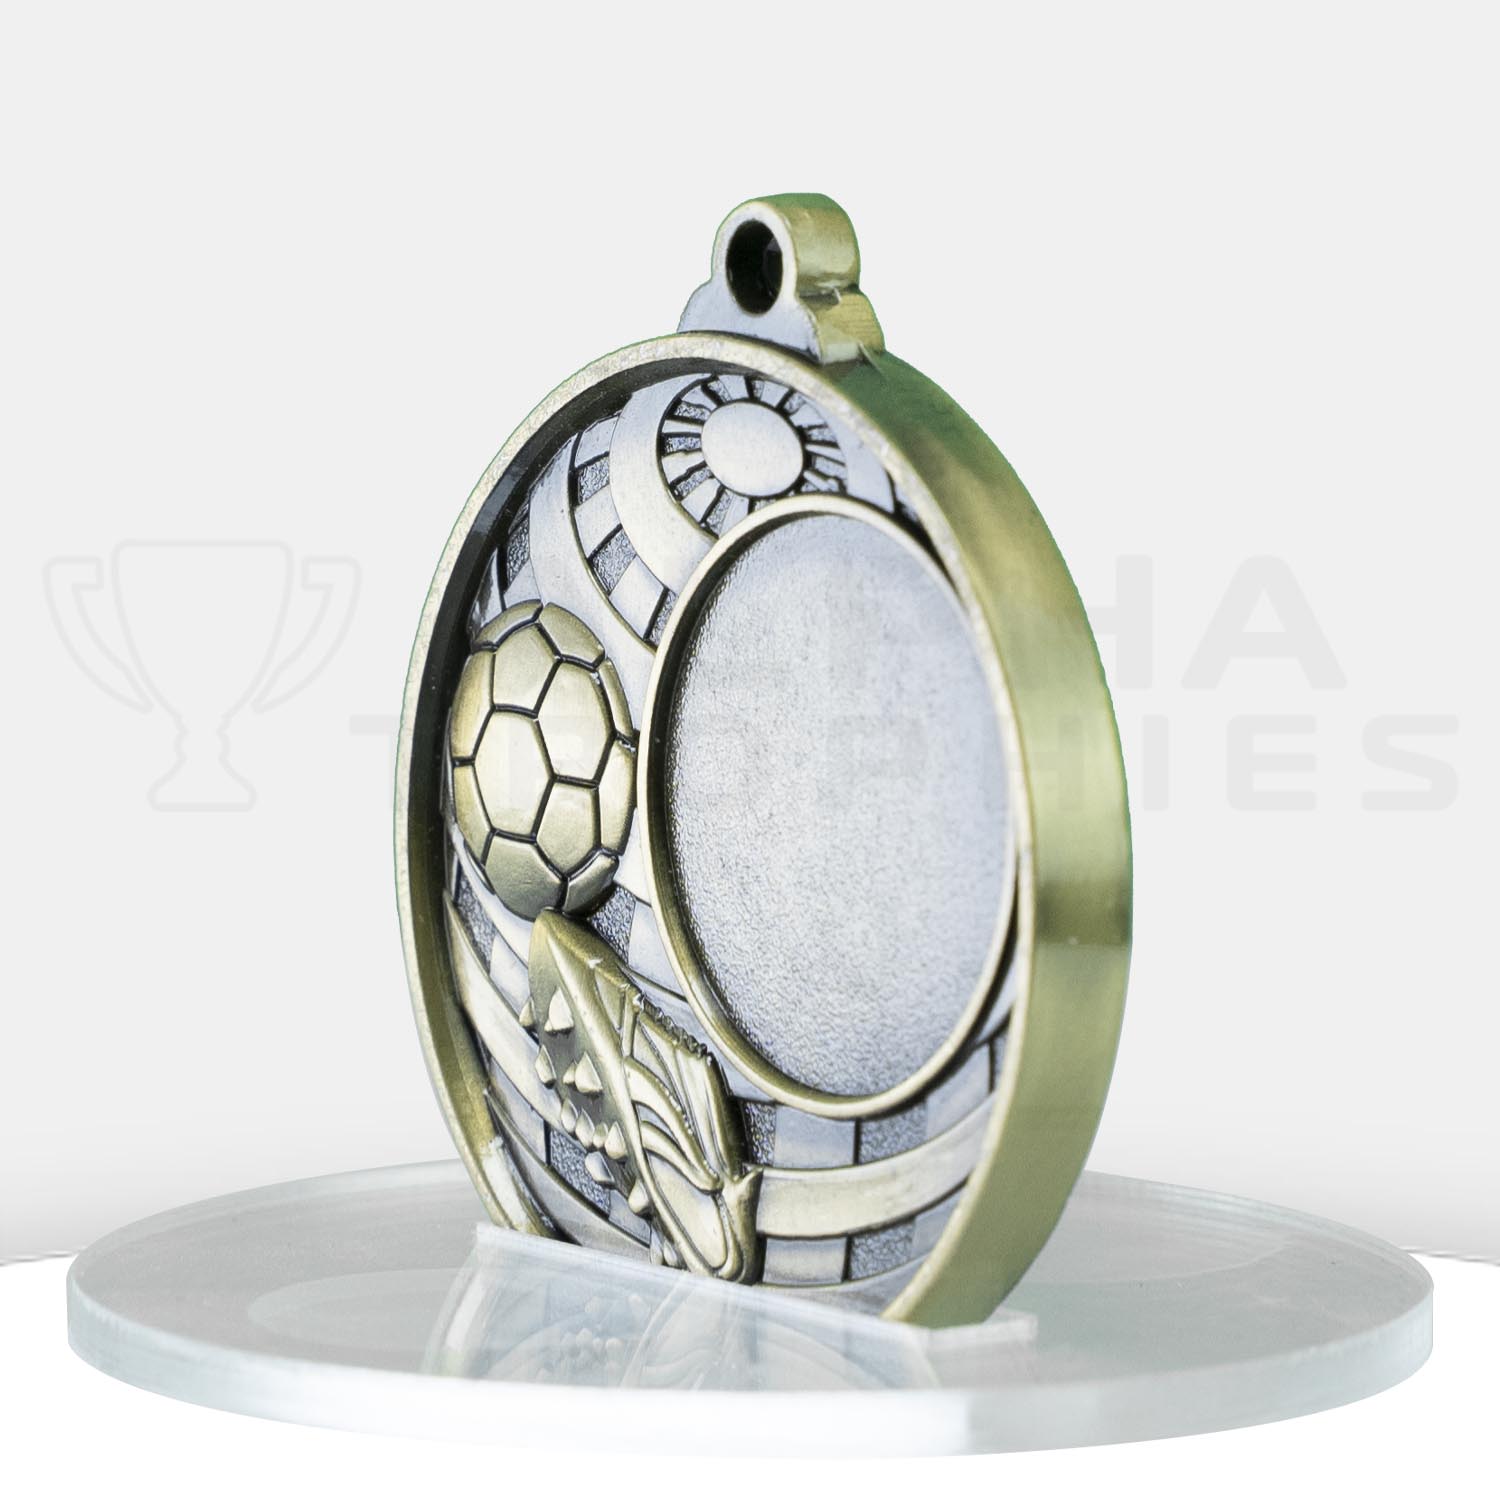 global-soccer-logo-medal-1073c-9g-side